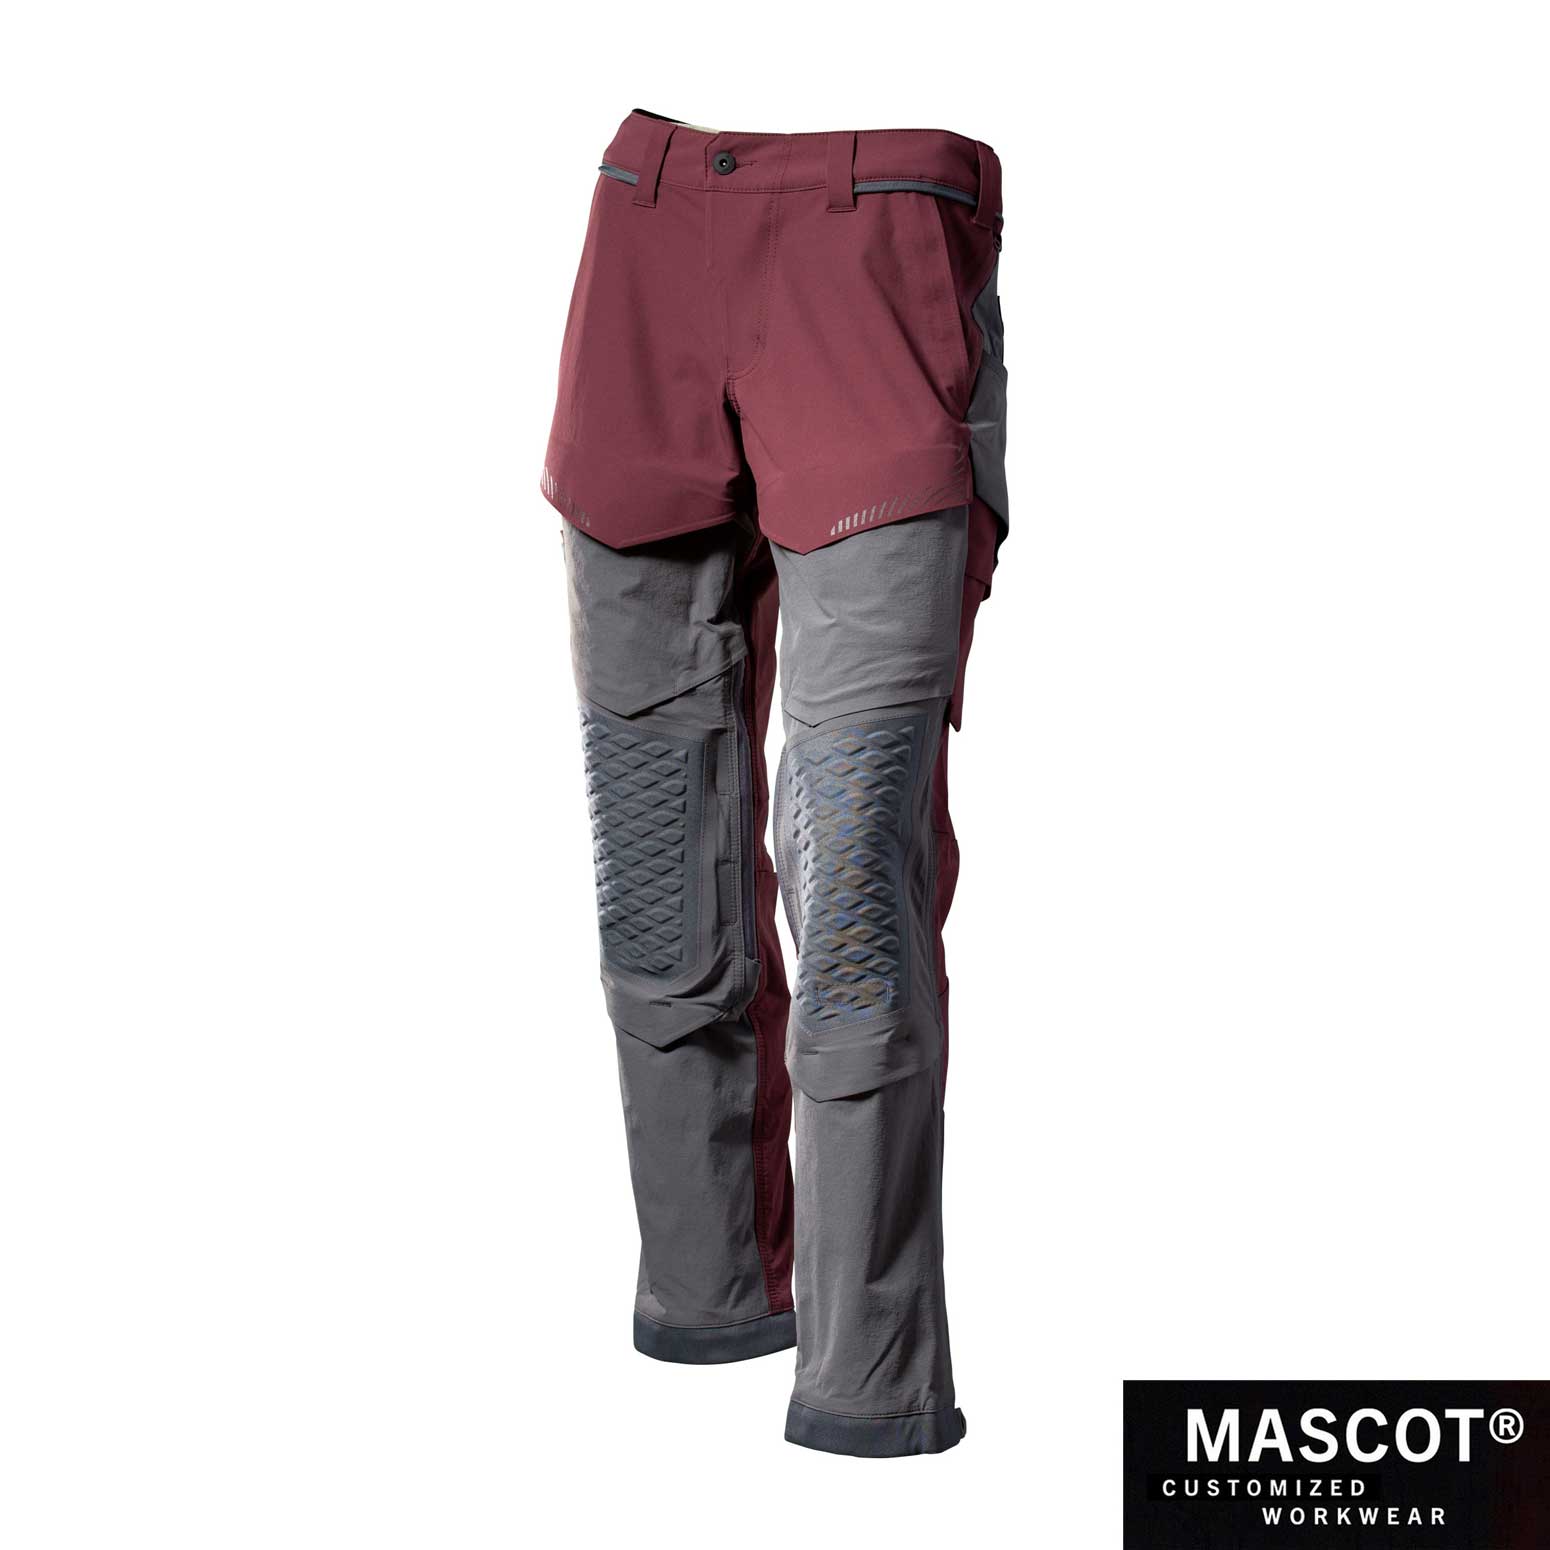 MASCOT® CUSTOMIZED Hose mit Knietaschen 22279 bordeaux/anthrazitgrau AT Arbeitsschutz GmbH – Bannenberg